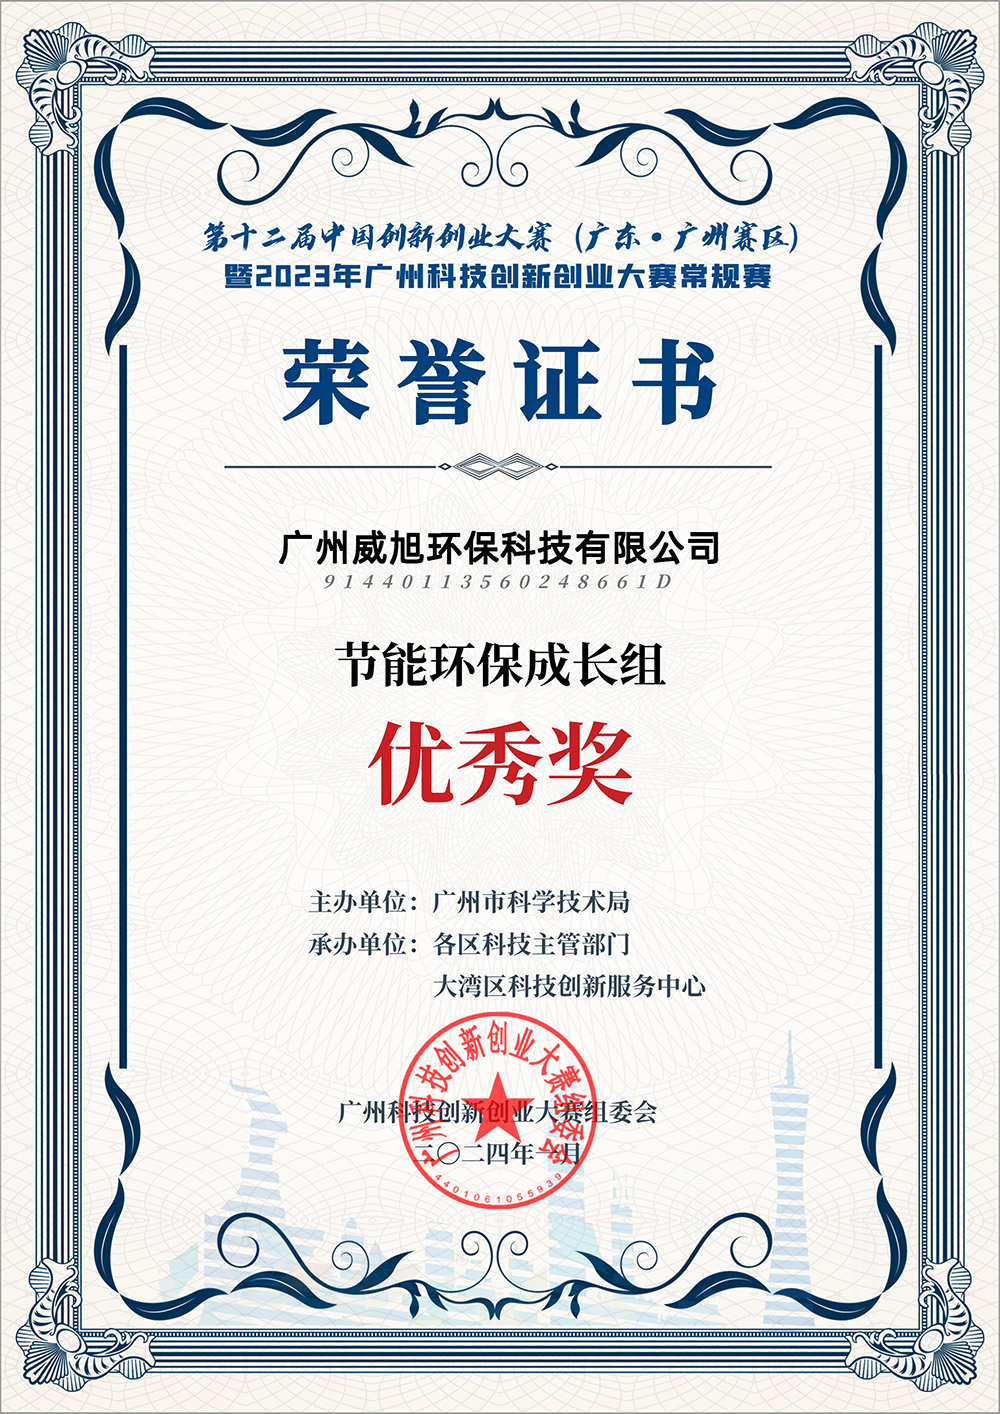 威旭环保荣获“第十二届中国创新创业大赛优秀奖”